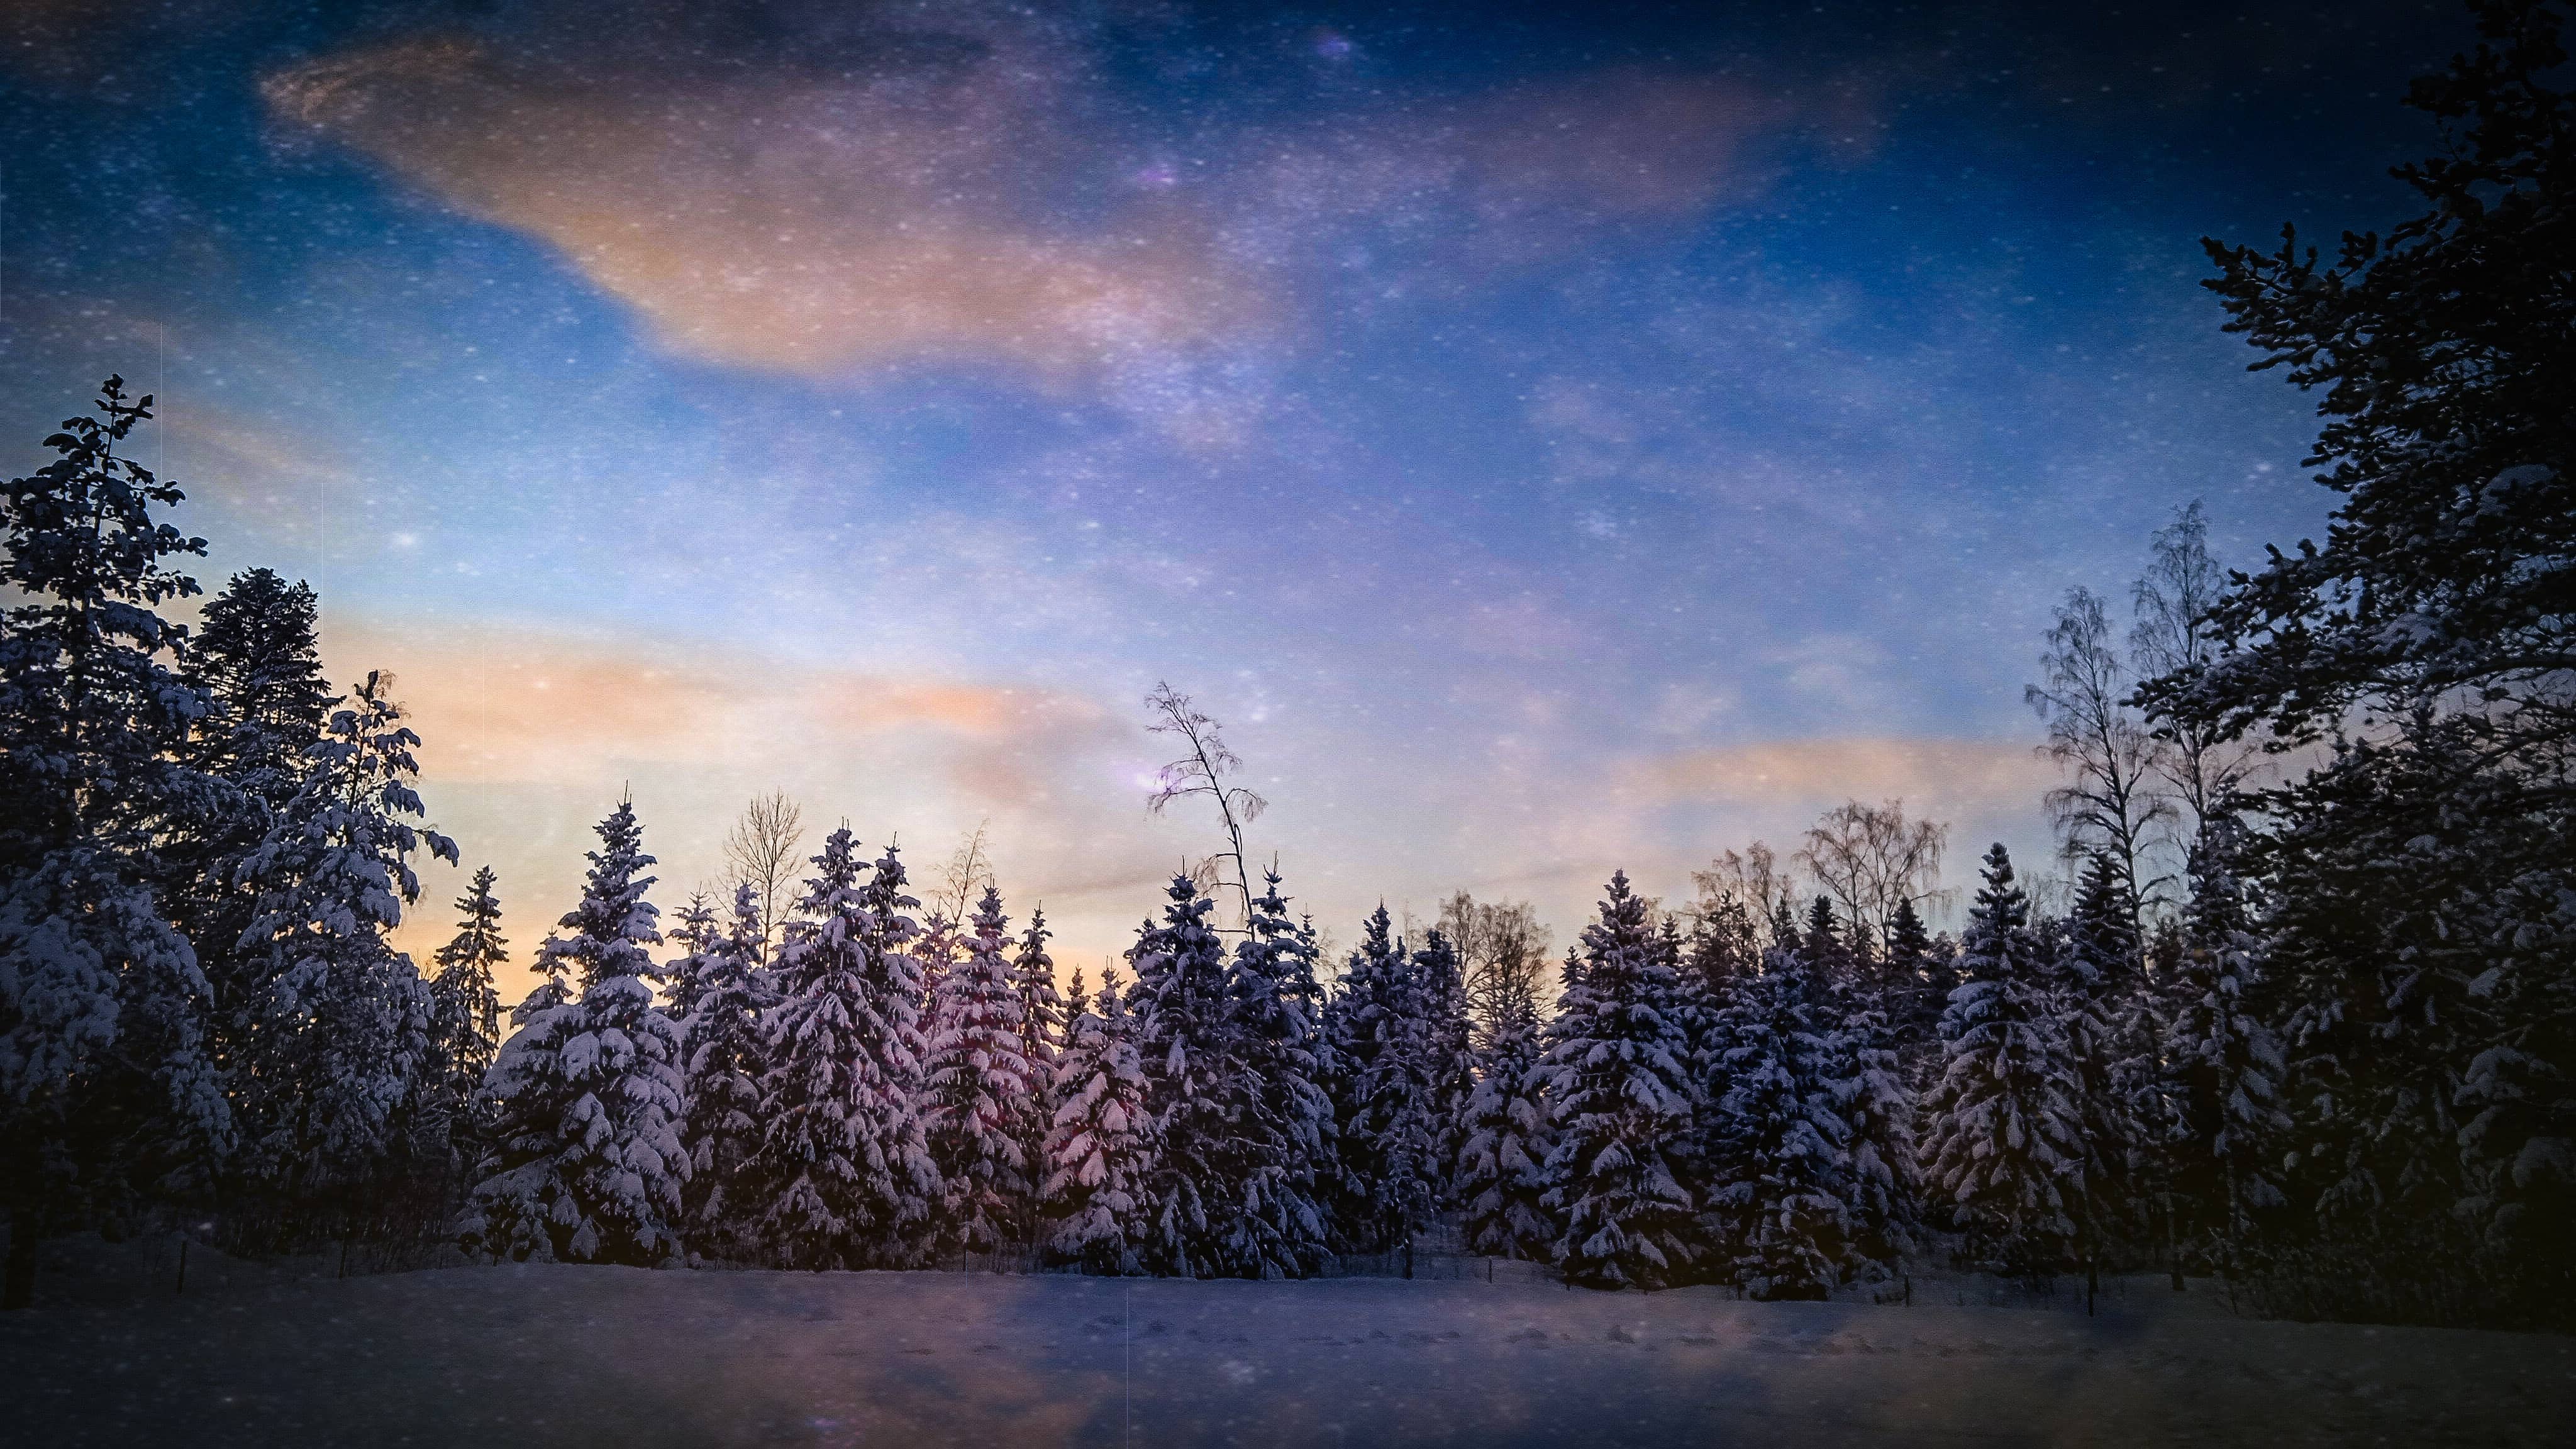 免费照片 冬天 森林 晚上 雪 蓝天 荒野 针叶 树 雪 景观